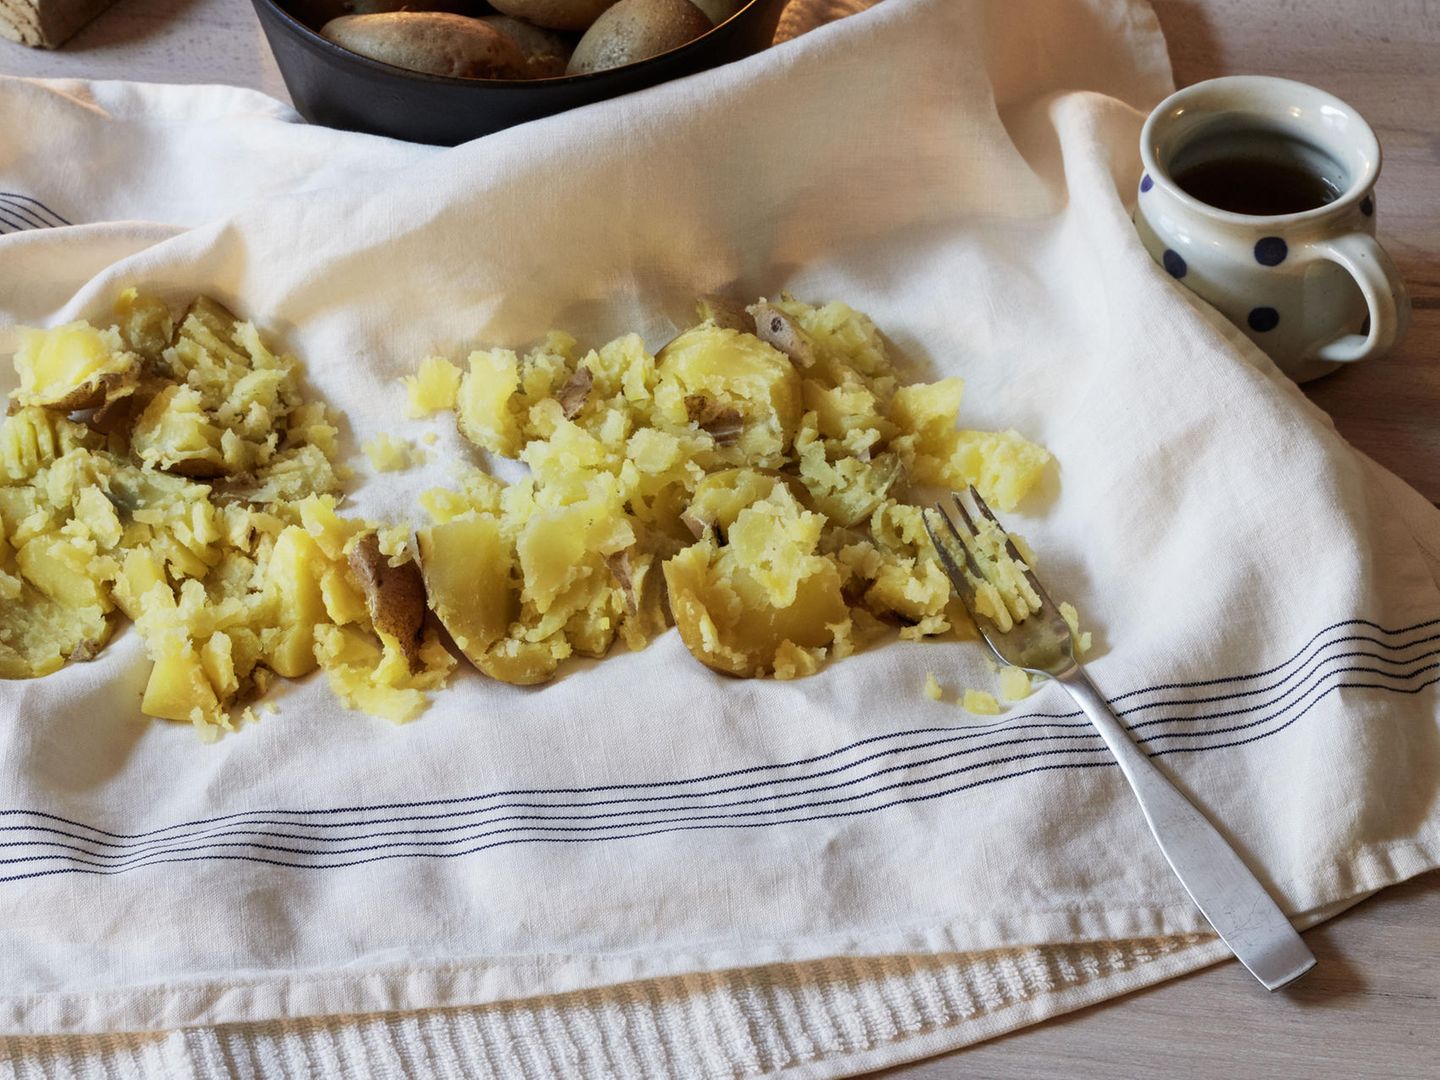 Kartoffelauflage bei Husten - Omas Hausrezept bringt Linderung